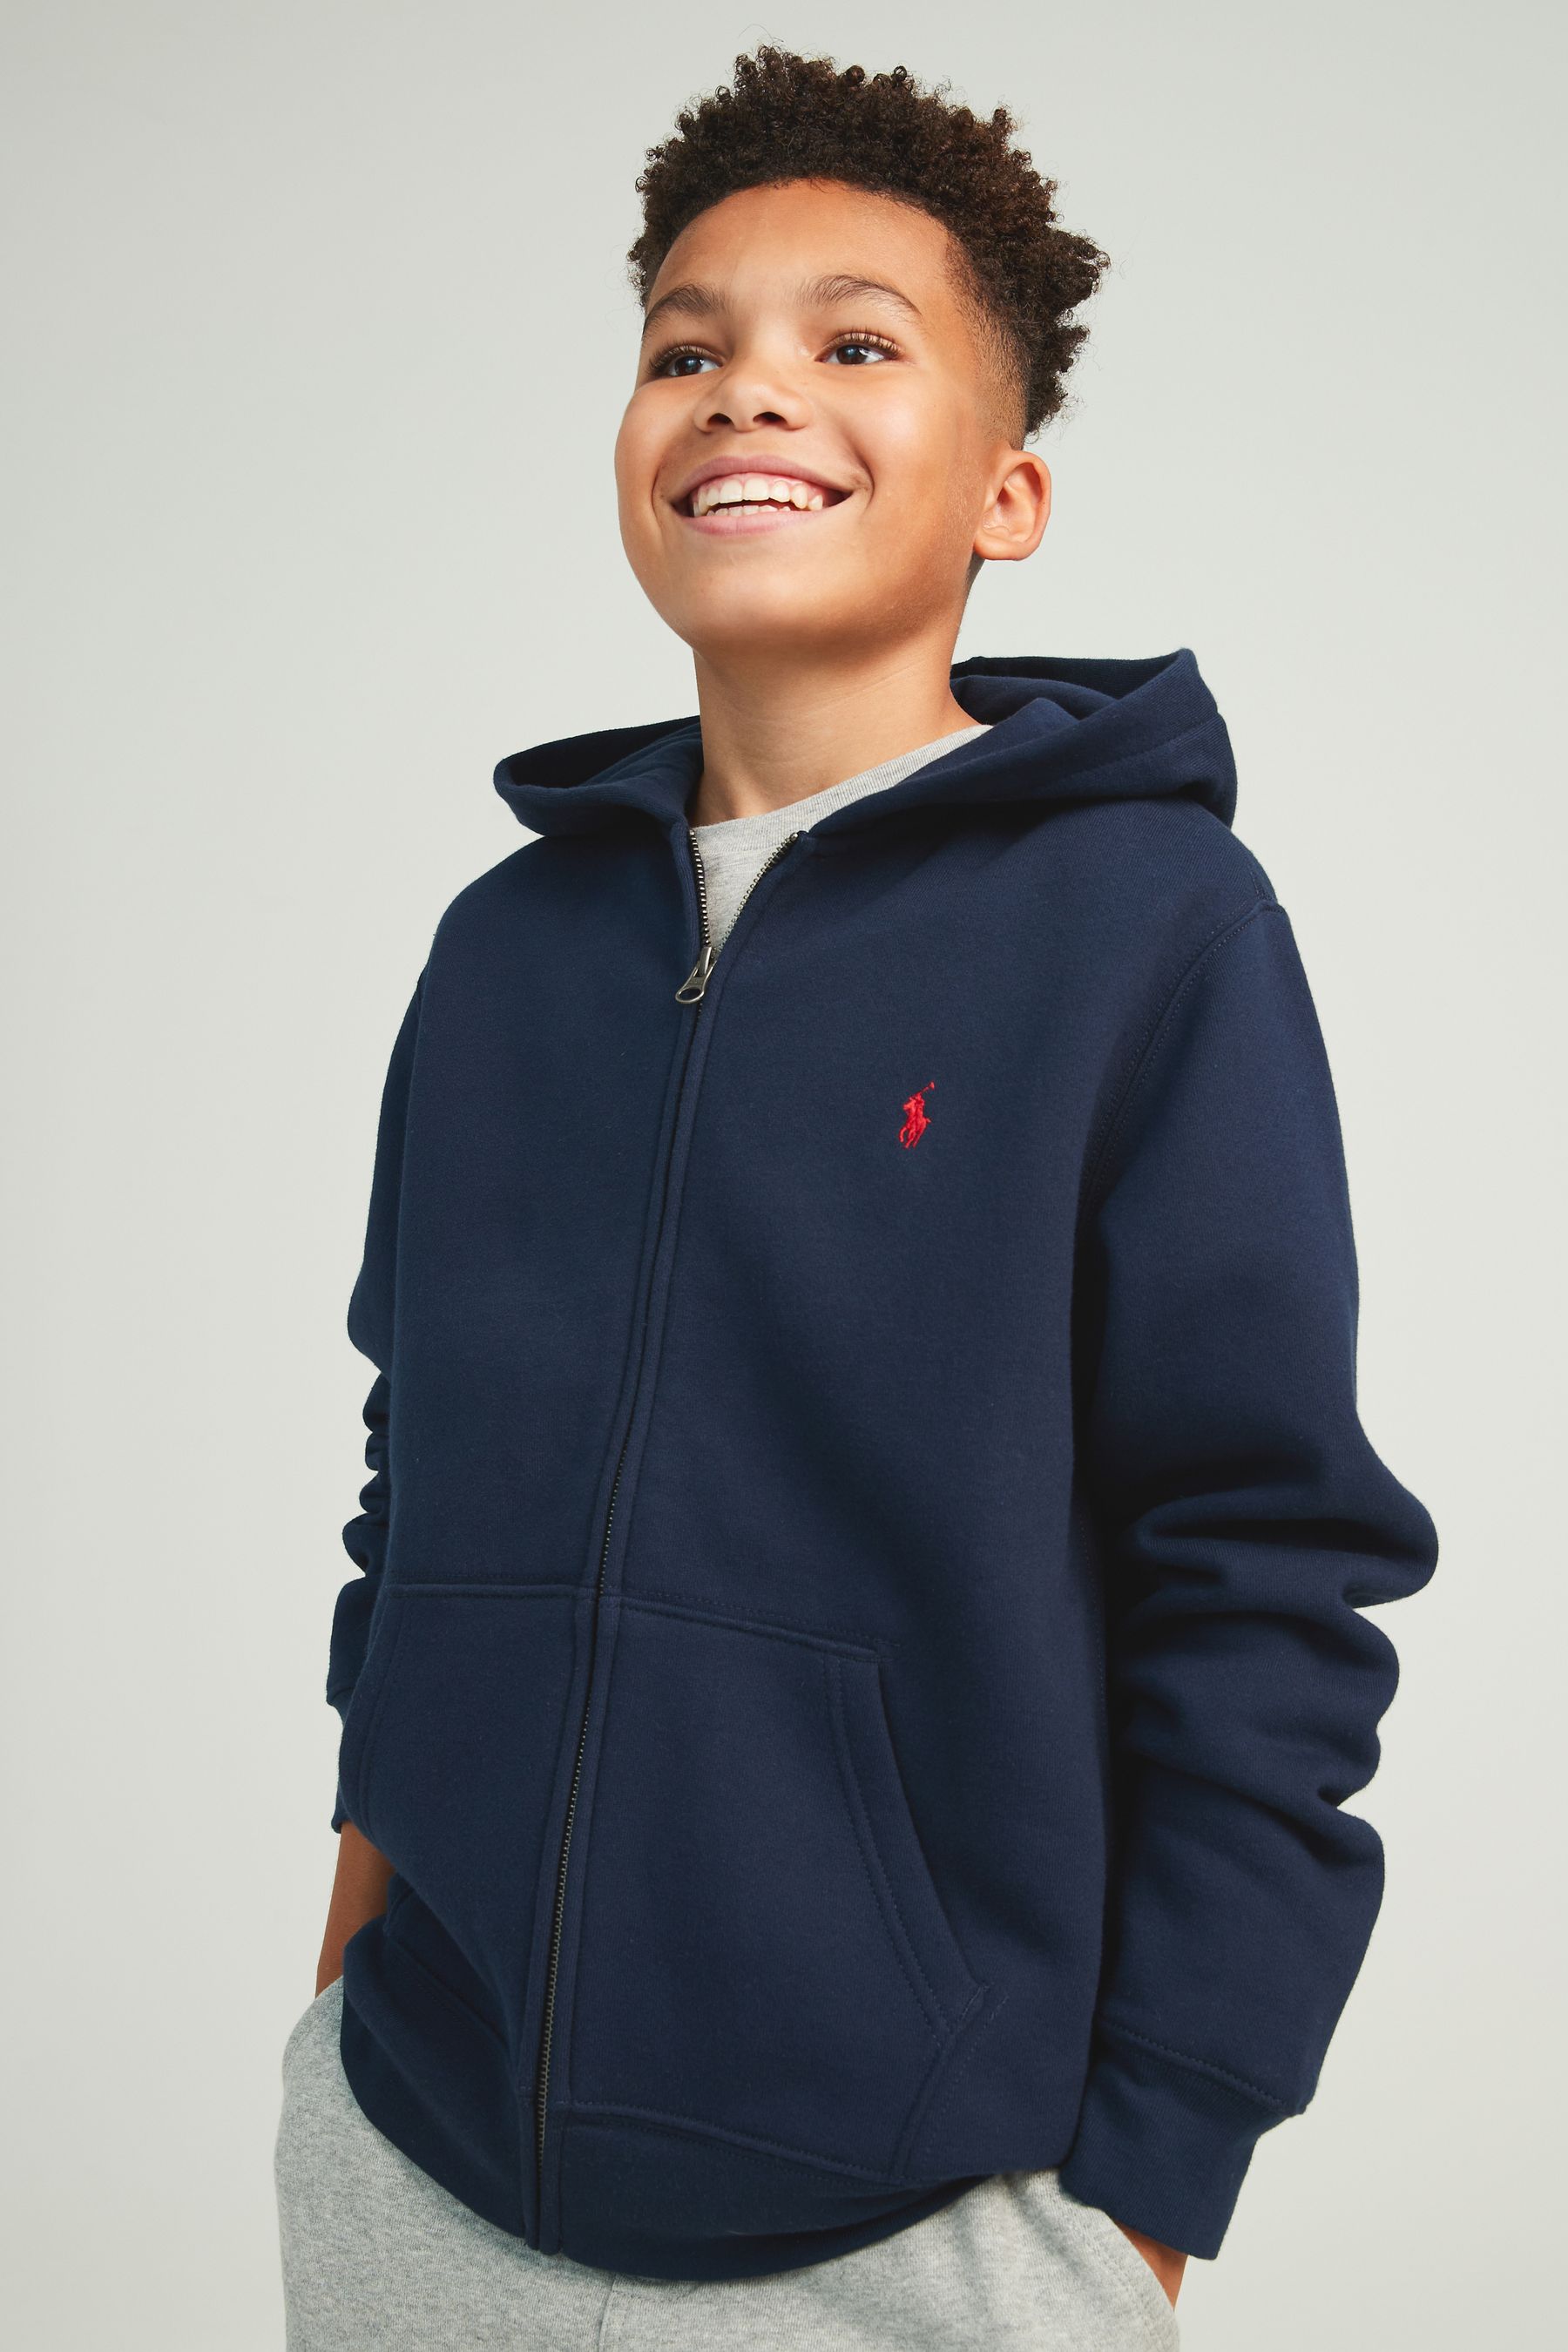 Buy Polo Ralph Lauren Boys Cotton Fleece Zip-Up Logo Hoodie from the ...